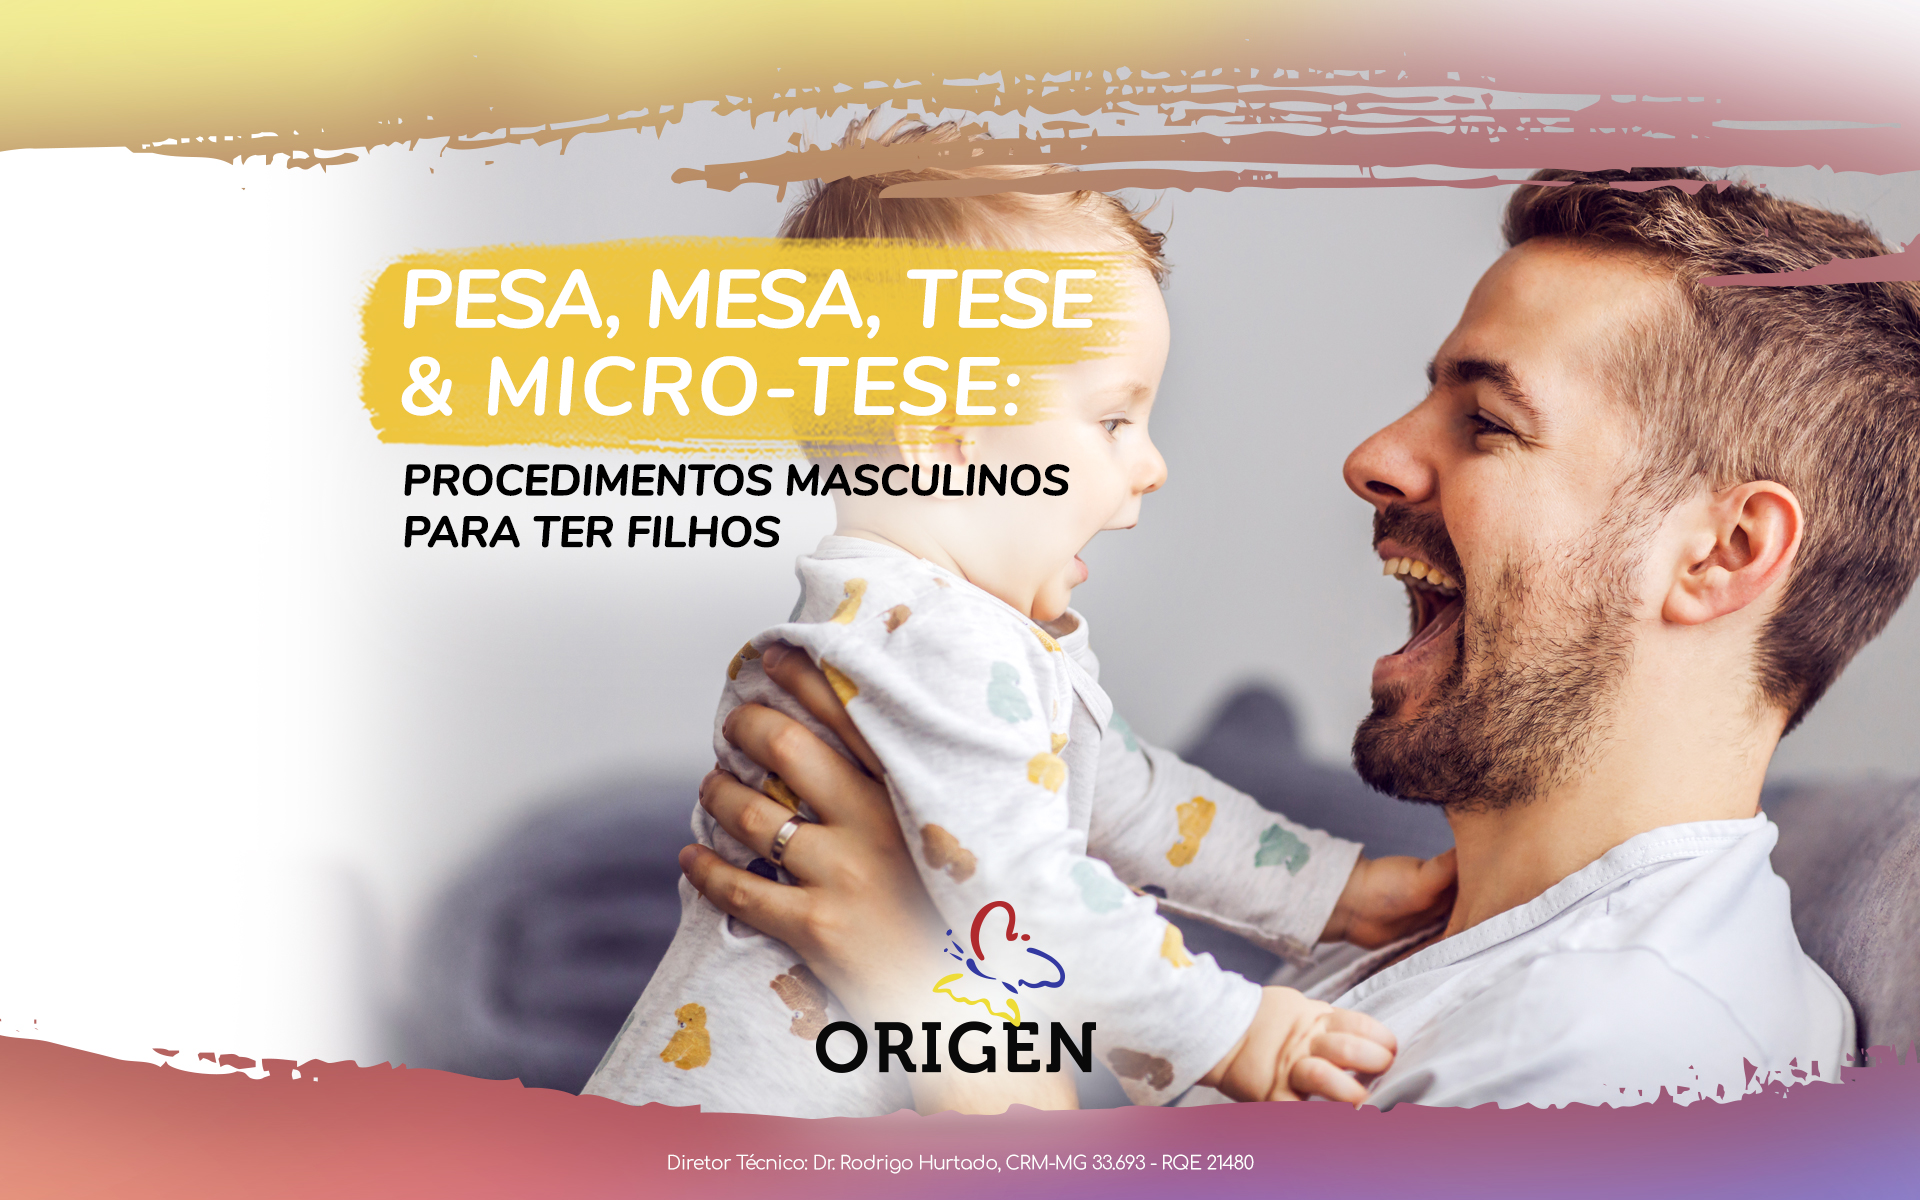 PESA, MESA, TESE e Micro-TESE: procedimentos masculinos para ter filhos